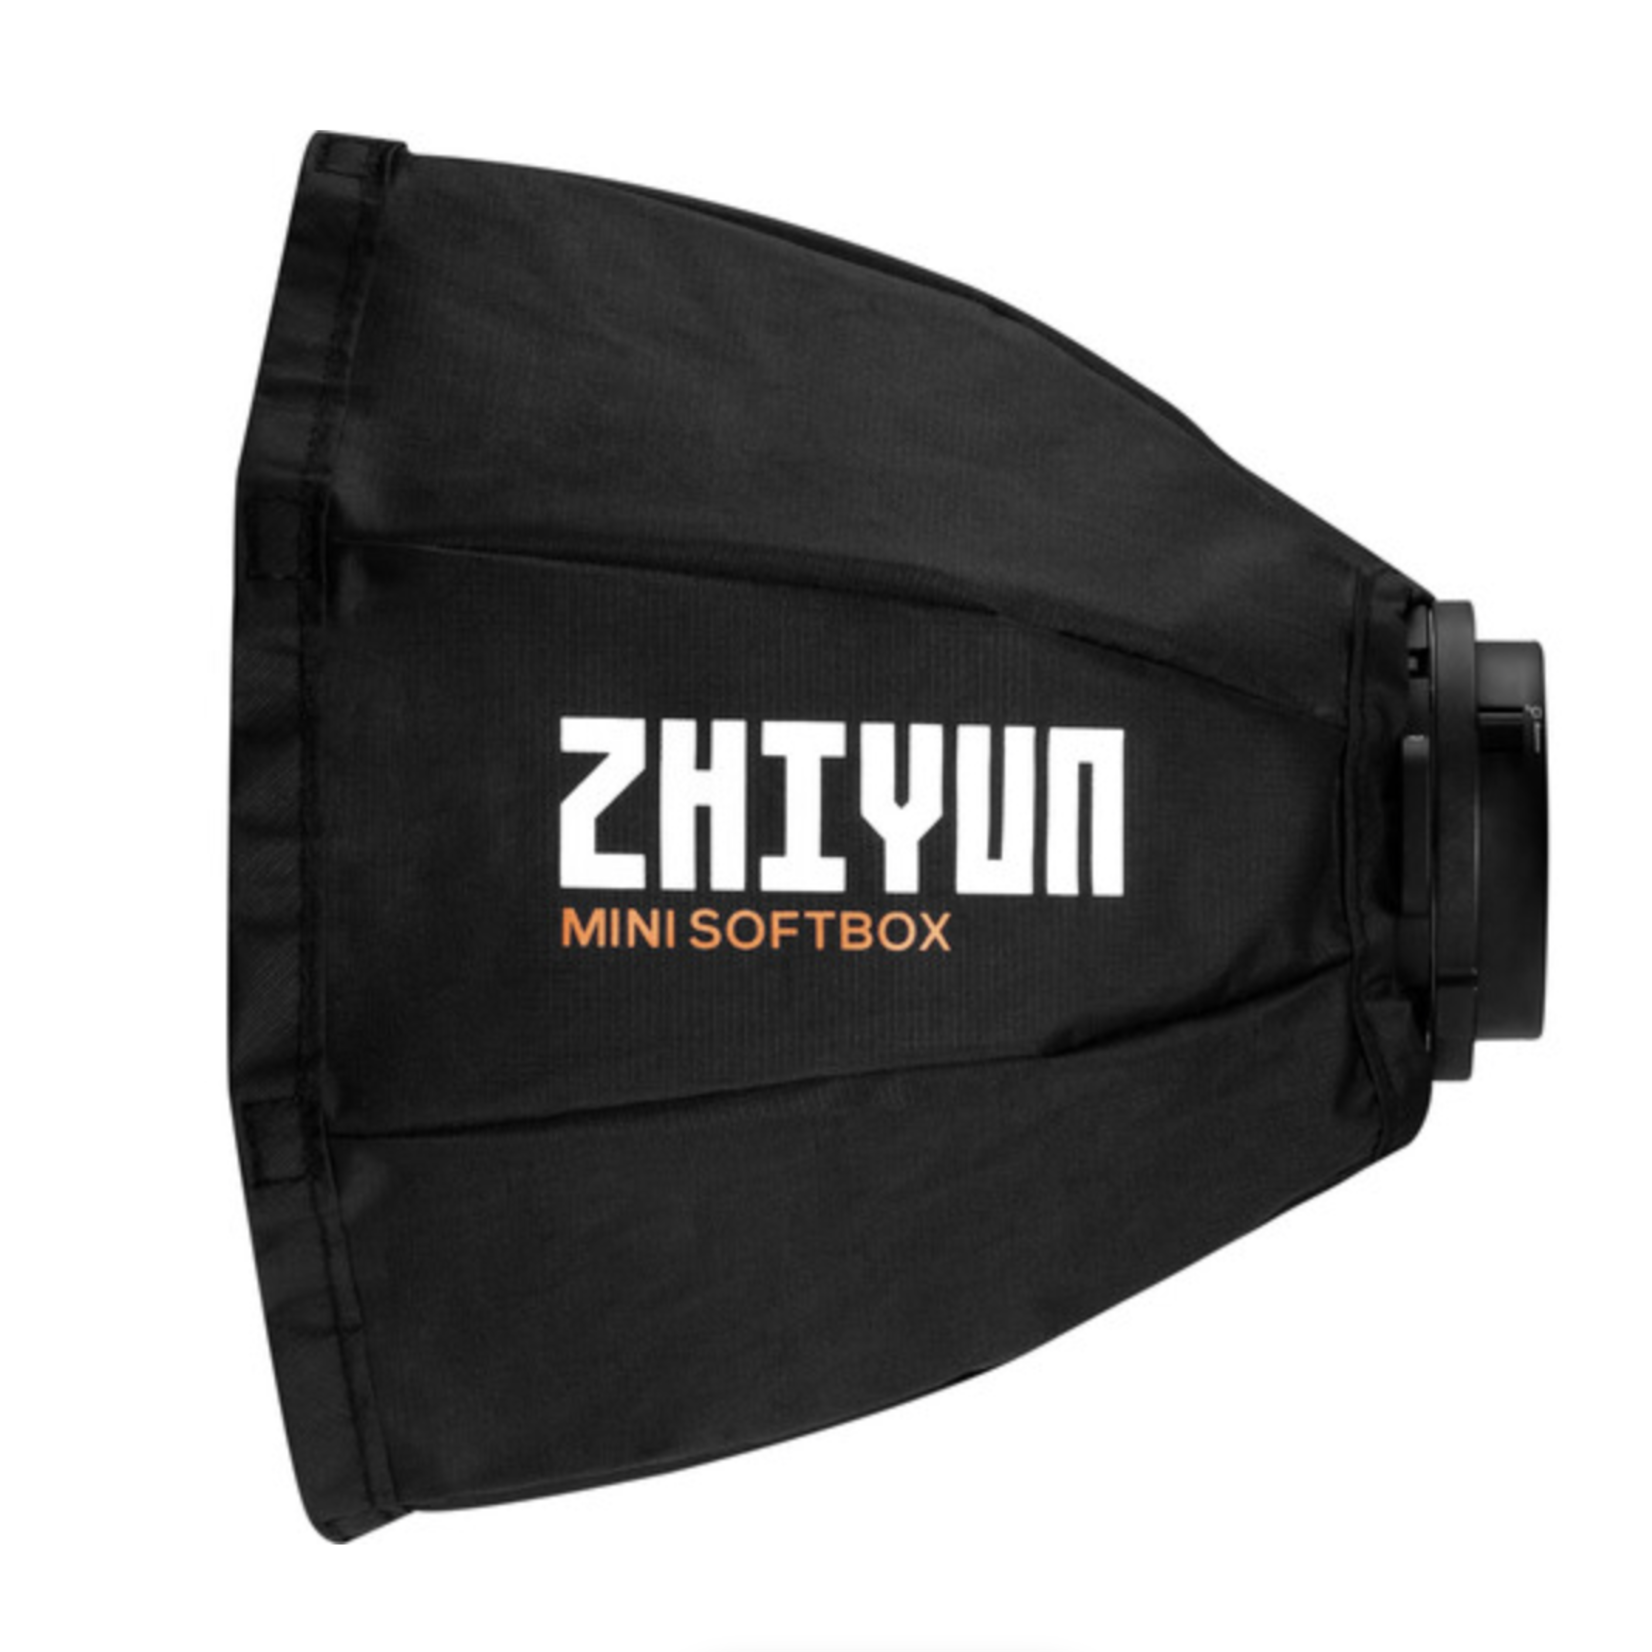 Zhiyun Zhiyun MOLUS G60 Bi-Color Mini COB Monolight (Combo Kit)